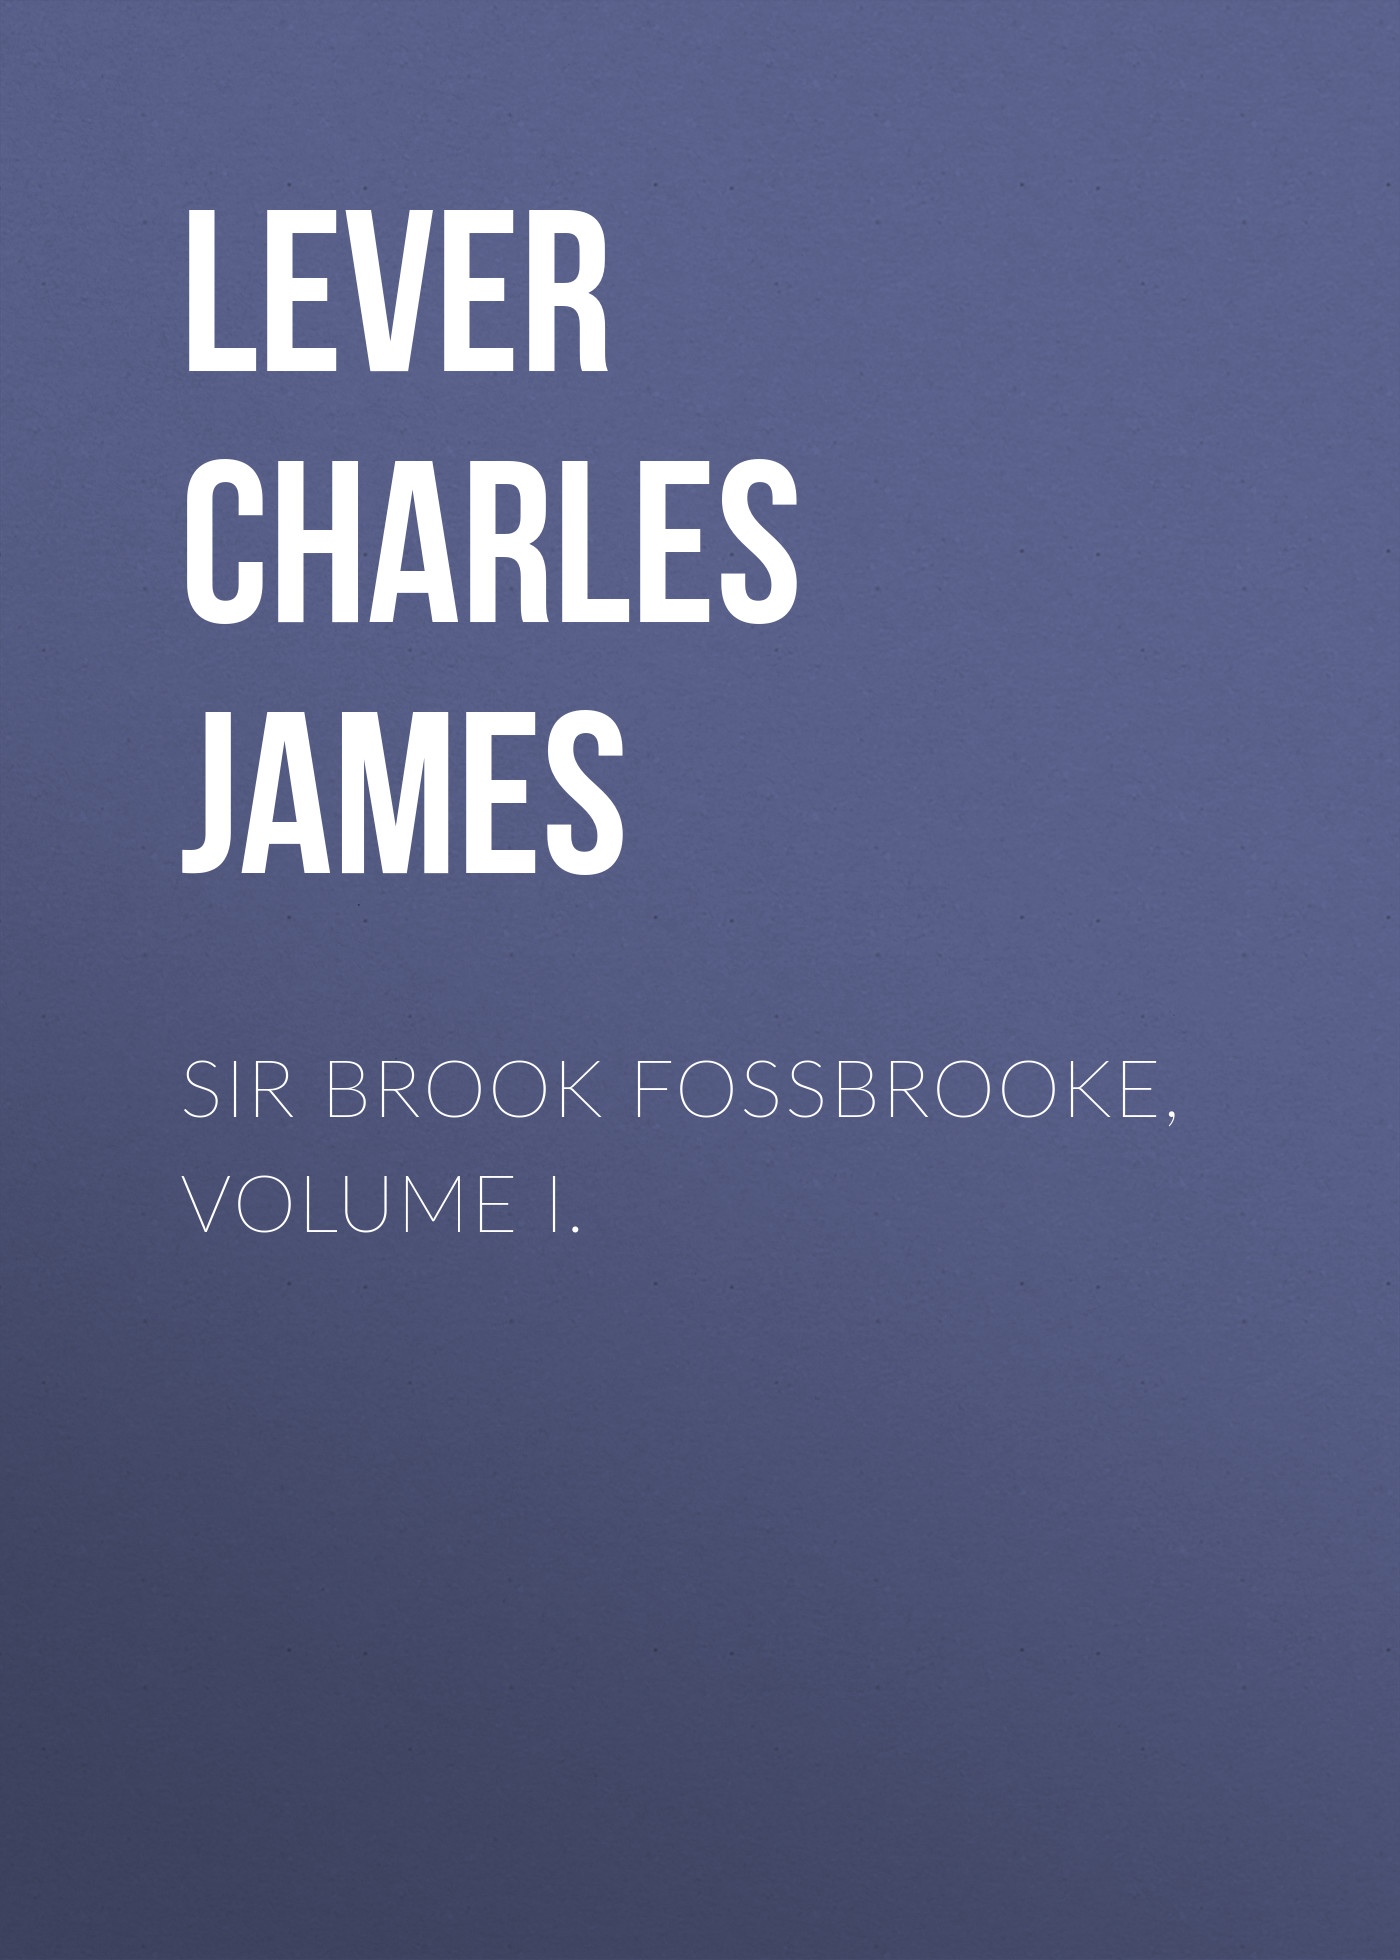 Книга Sir Brook Fossbrooke, Volume I. из серии , созданная Charles Lever, может относится к жанру Литература 19 века, Зарубежная старинная литература, Зарубежная классика. Стоимость электронной книги Sir Brook Fossbrooke, Volume I. с идентификатором 25451220 составляет 0 руб.